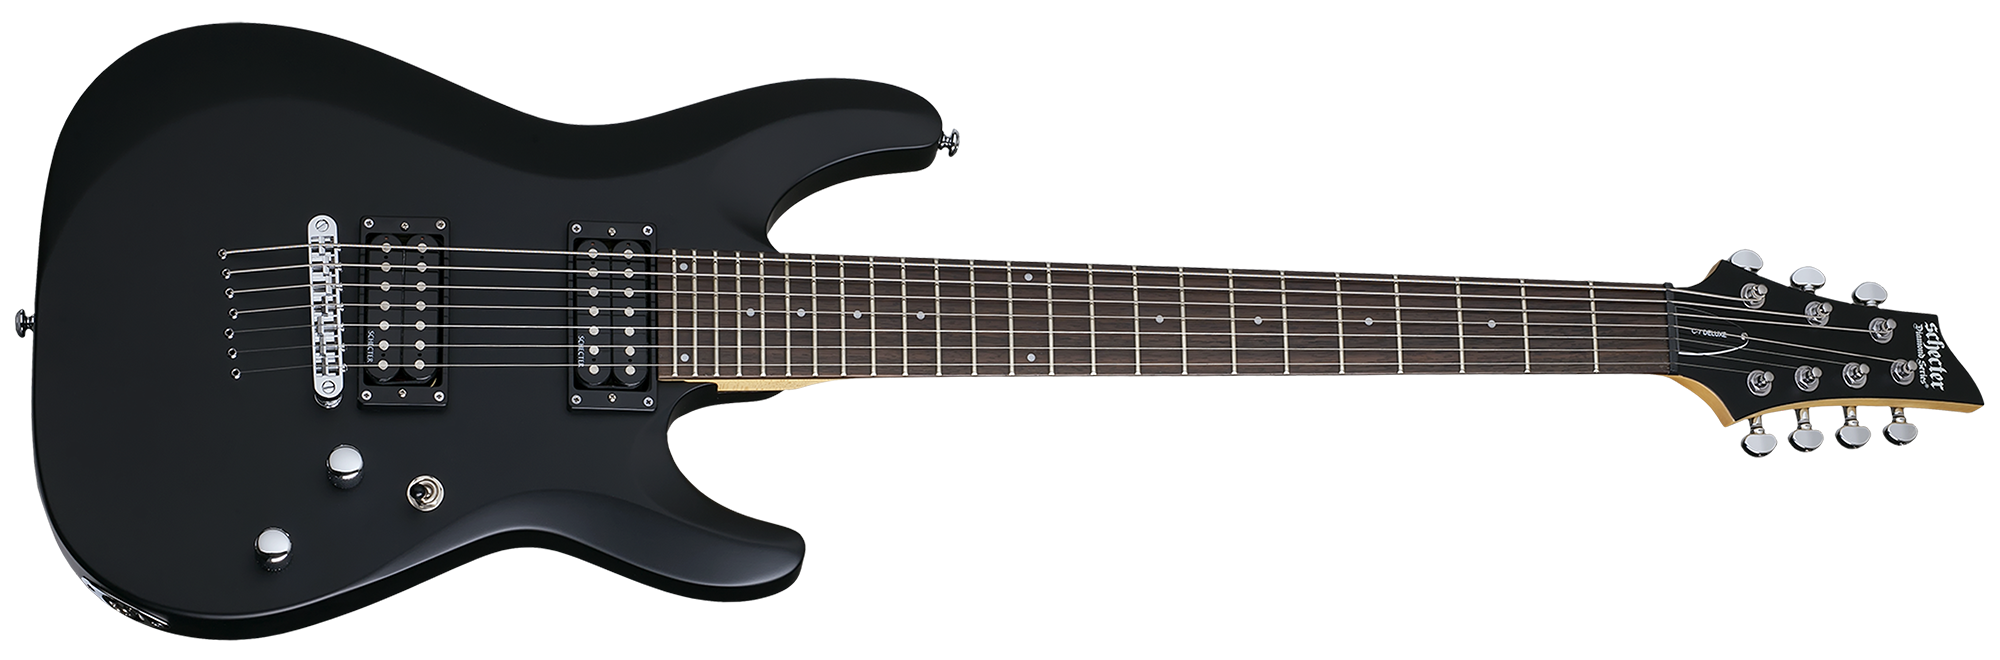 Schecter C-7 Deluxe in Satin Black SBK SKU 437 - The Guitar World